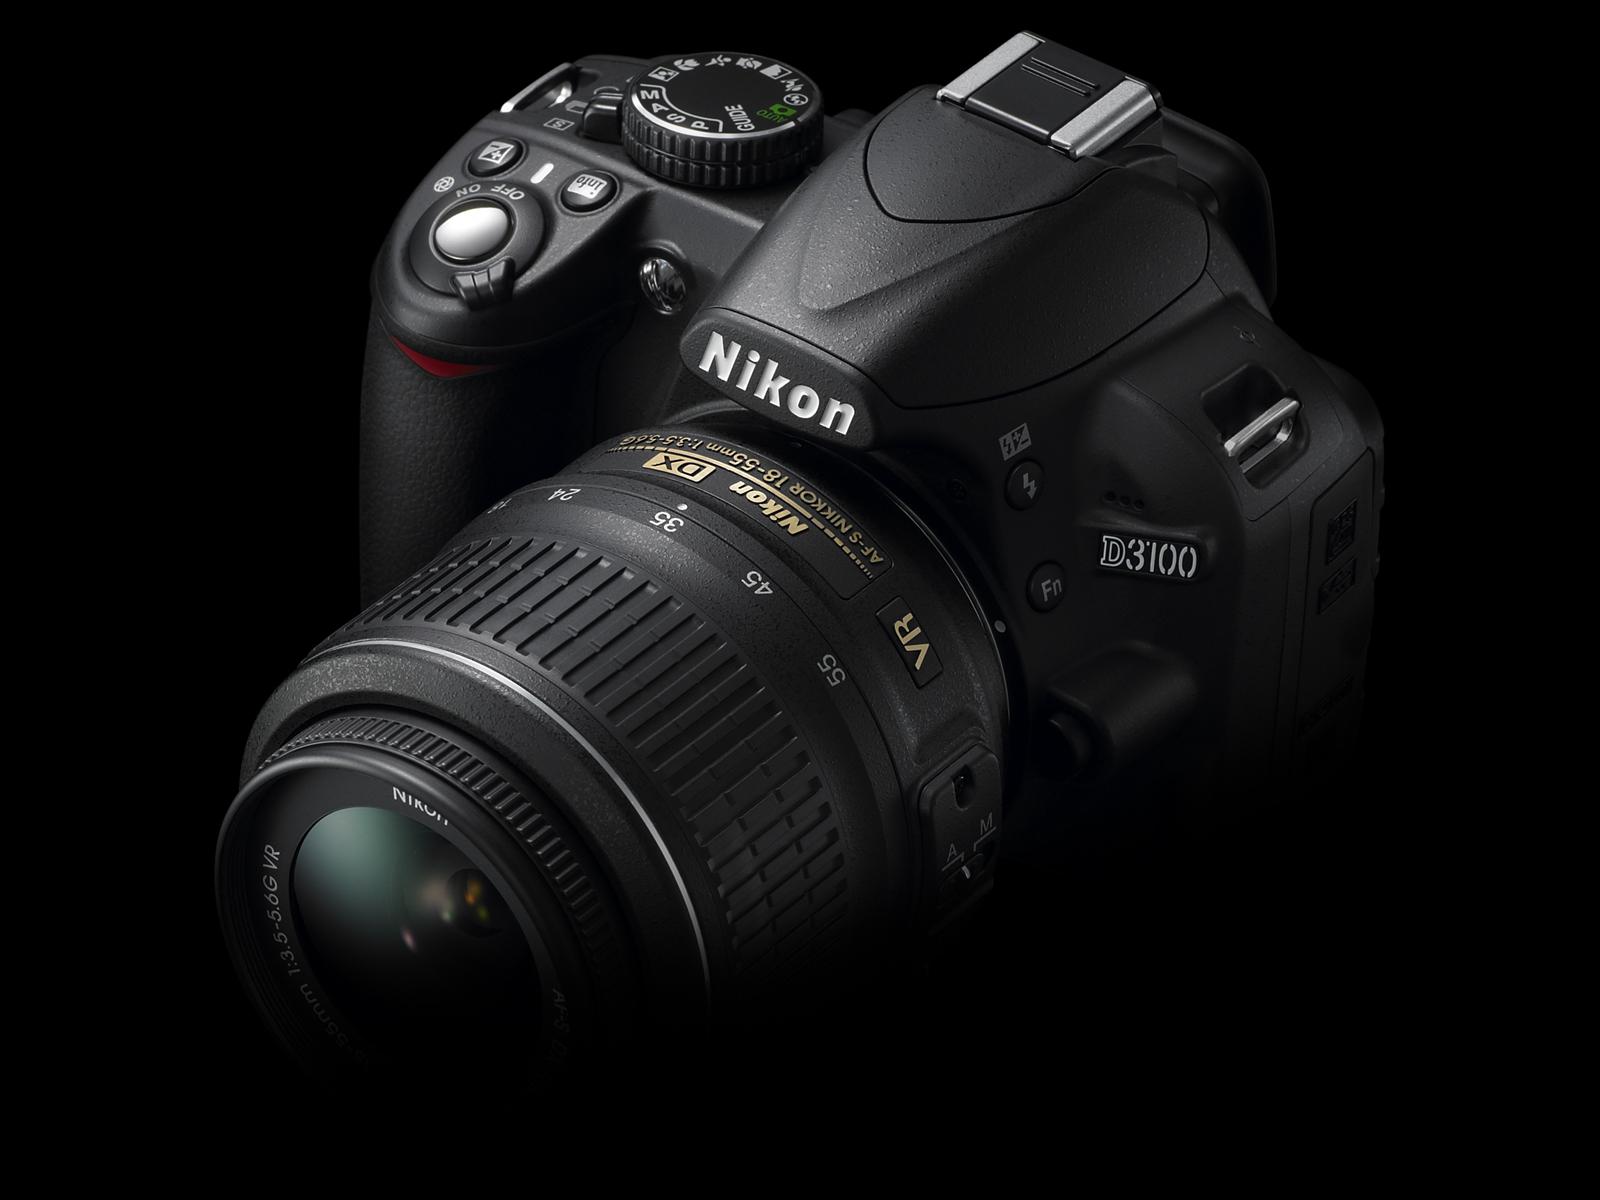 Nikon officially announced Nikon D3100 replacement for Nikon D3000